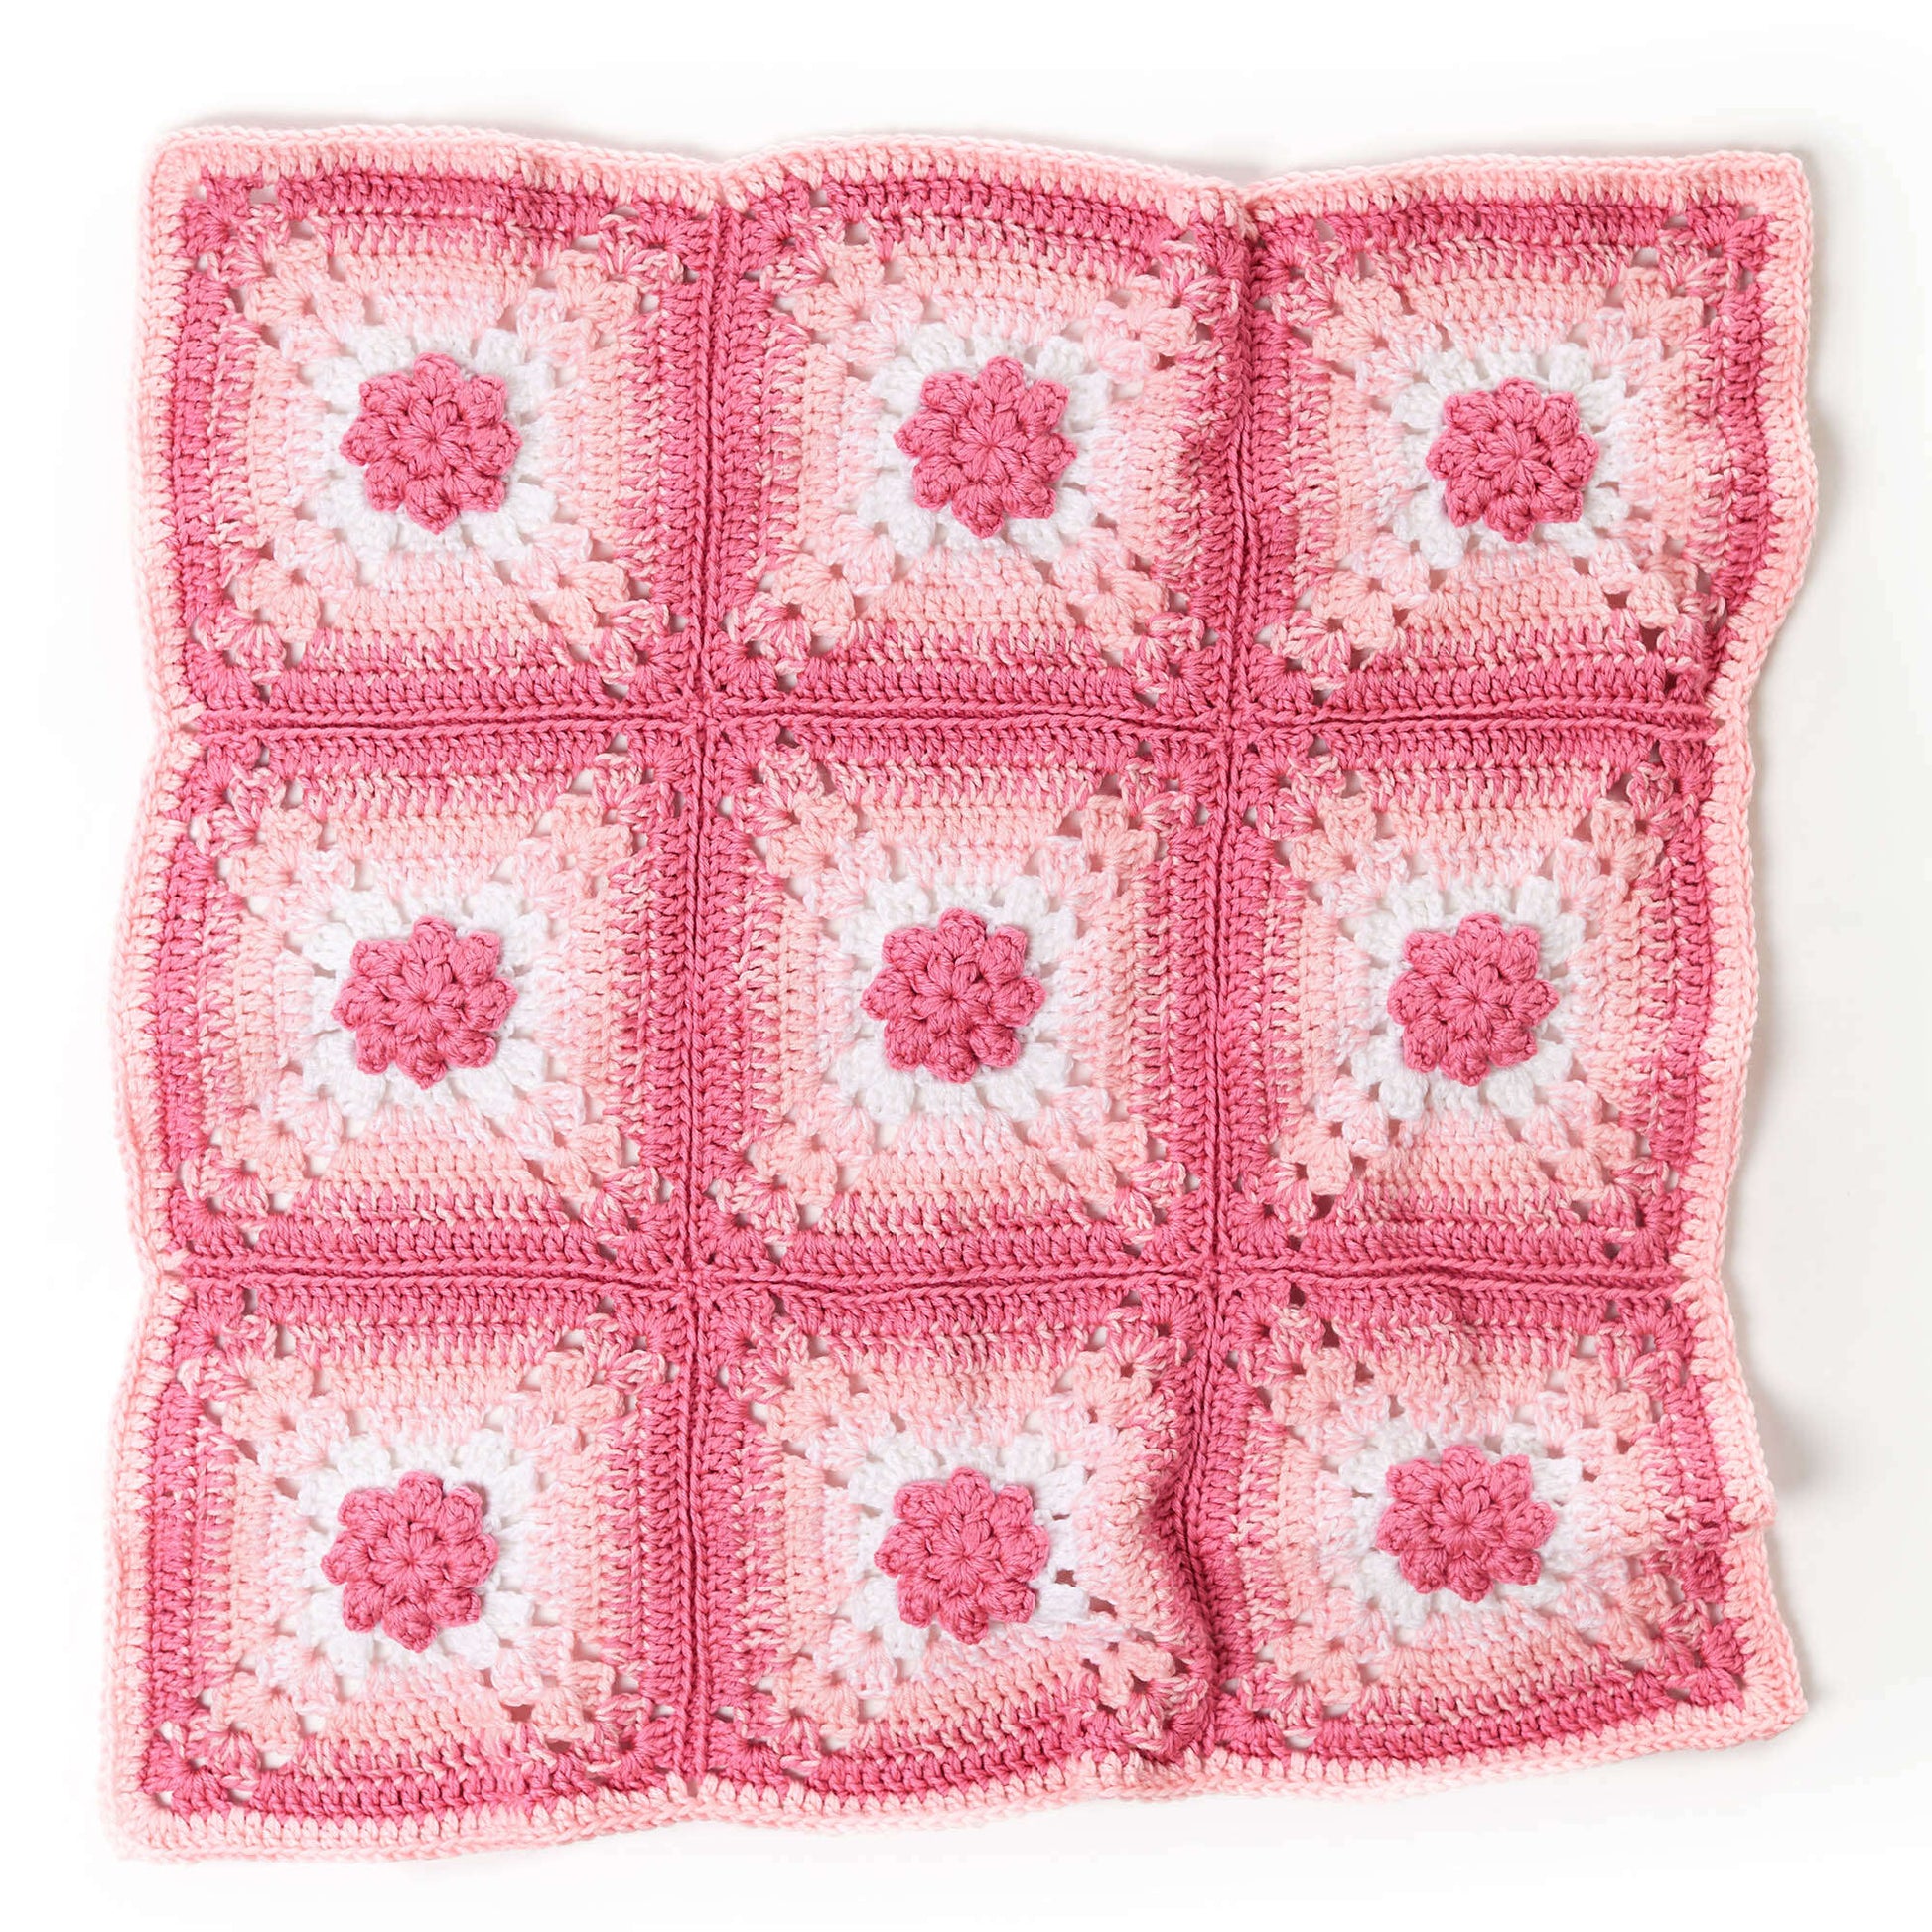 Free Red Heart Fancy Flowers Crochet Baby Blanket Pattern